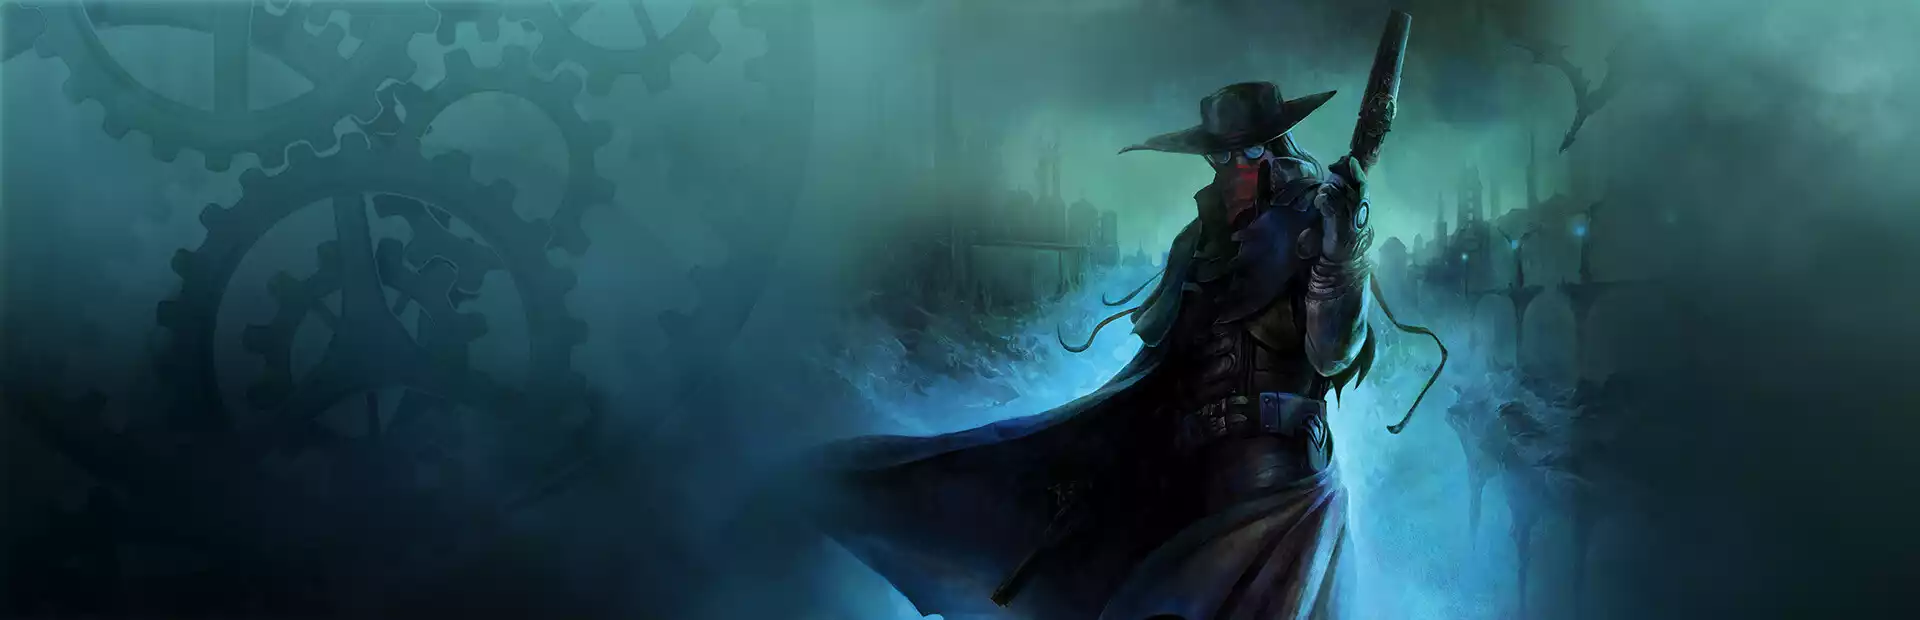 The Incredible Adventures of Van Helsing: Final Cut Steam Key China